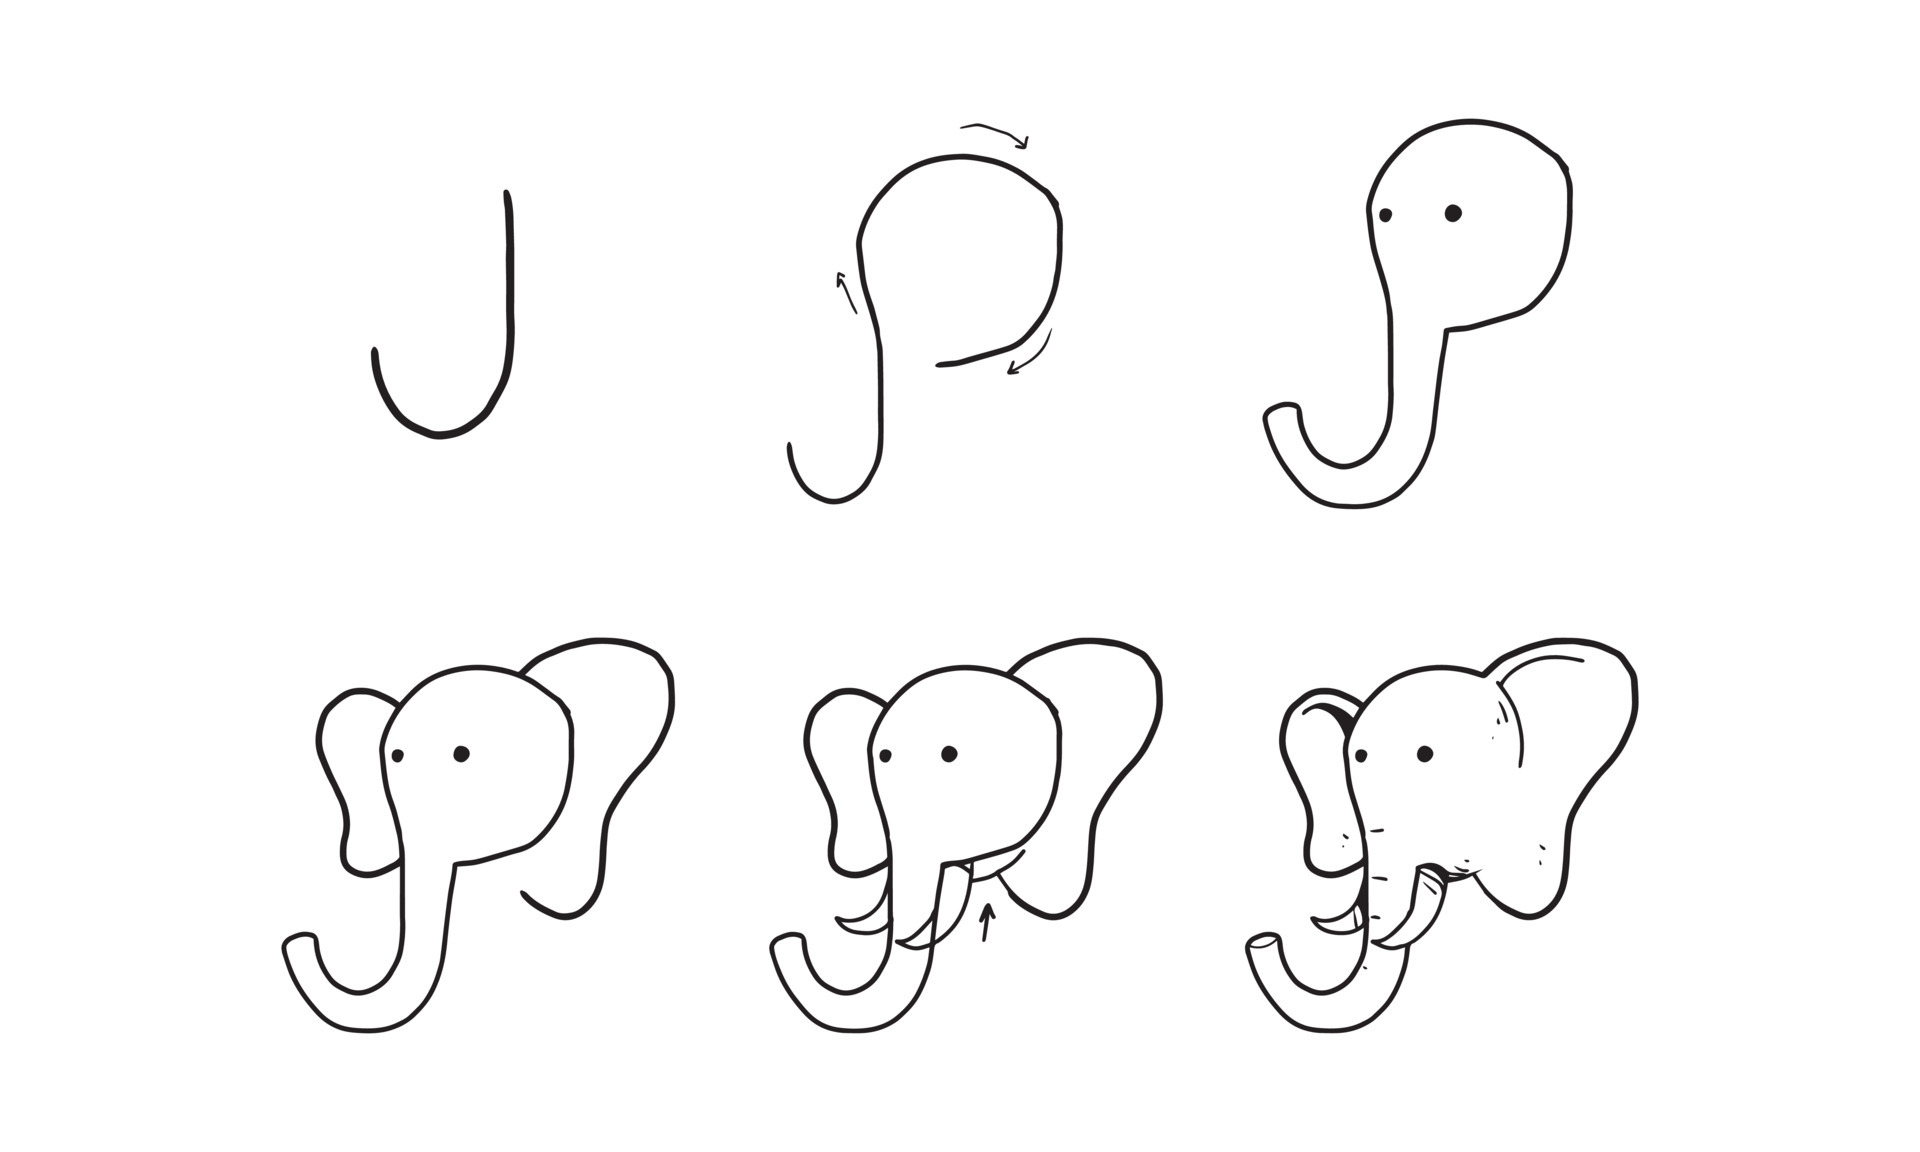 como desenhar um elefante fofo passo a passo. atividade fácil e